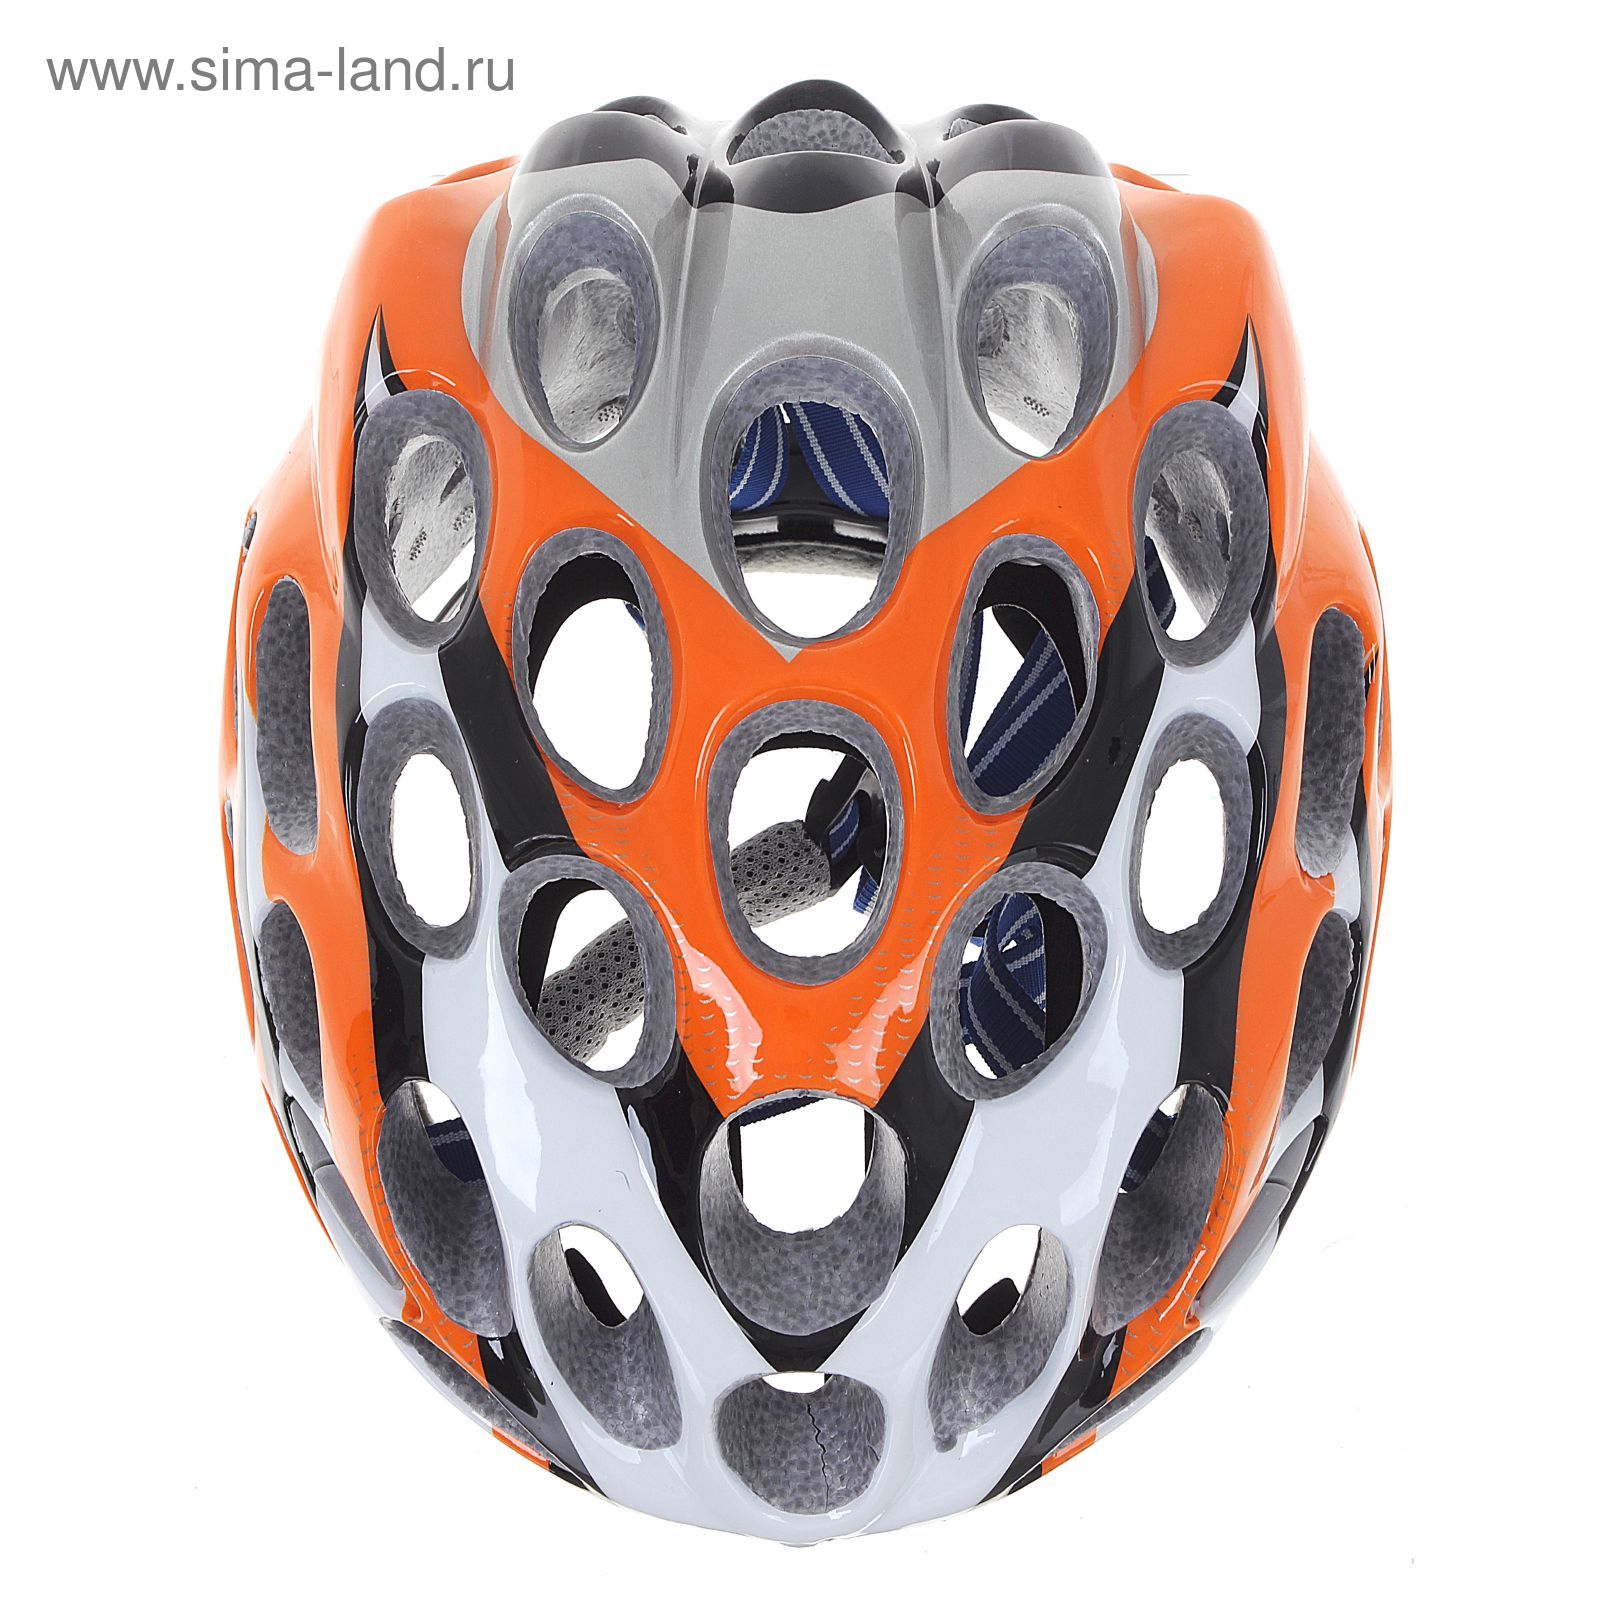 Шлем велосипедиста взрослый ОТ-T39, оранжевый, диаметр 54 см